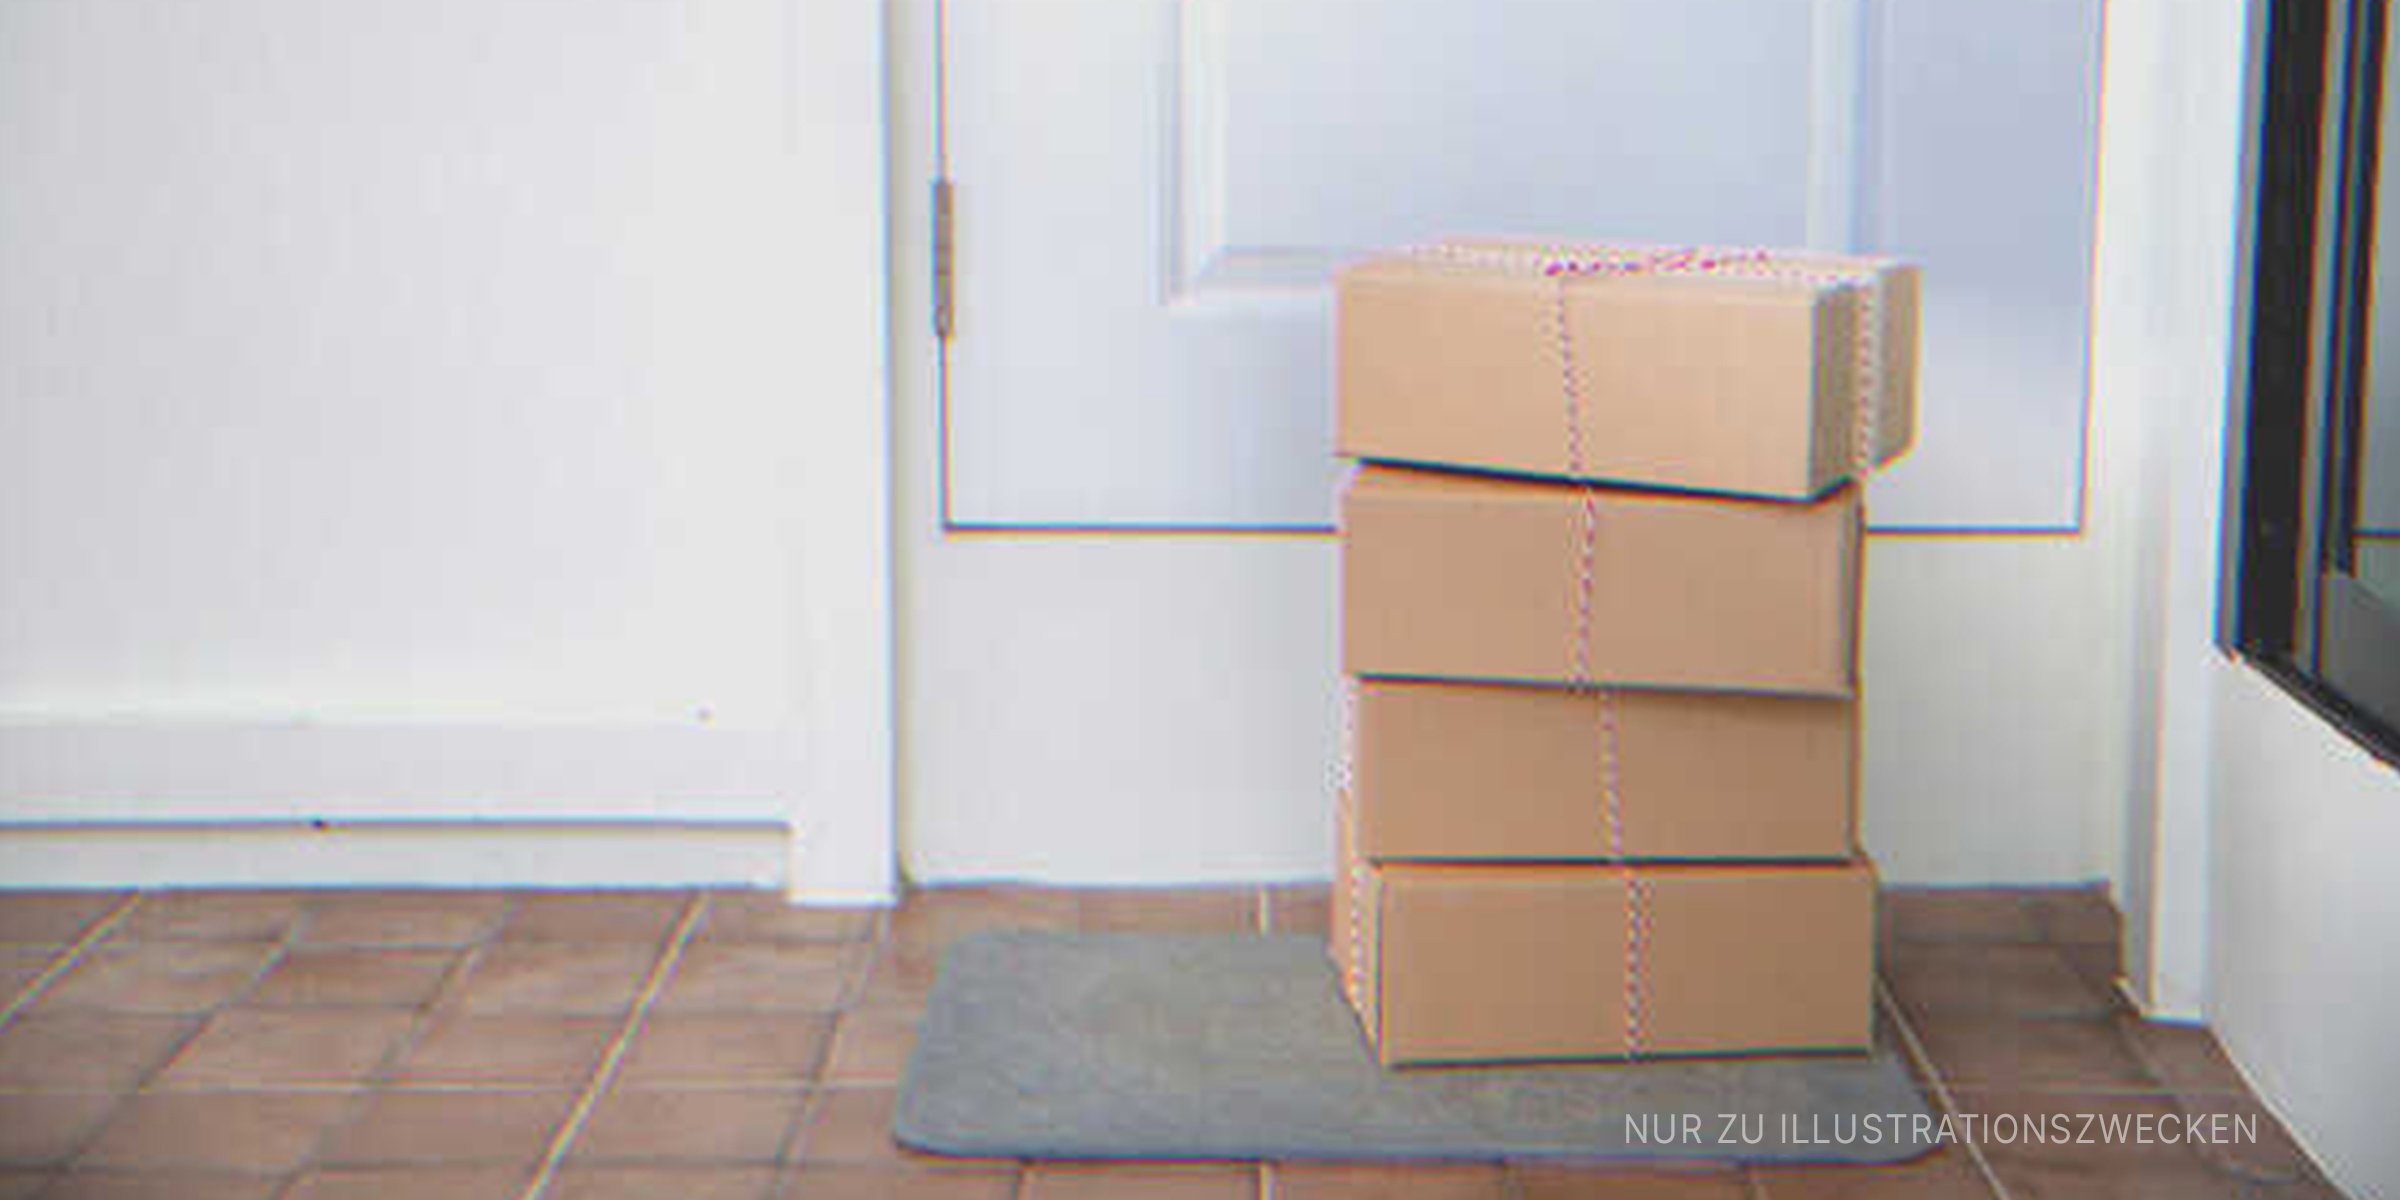 Ein Stapel von vier Kisten auf einer Türschwelle | Quelle: Shutterstock